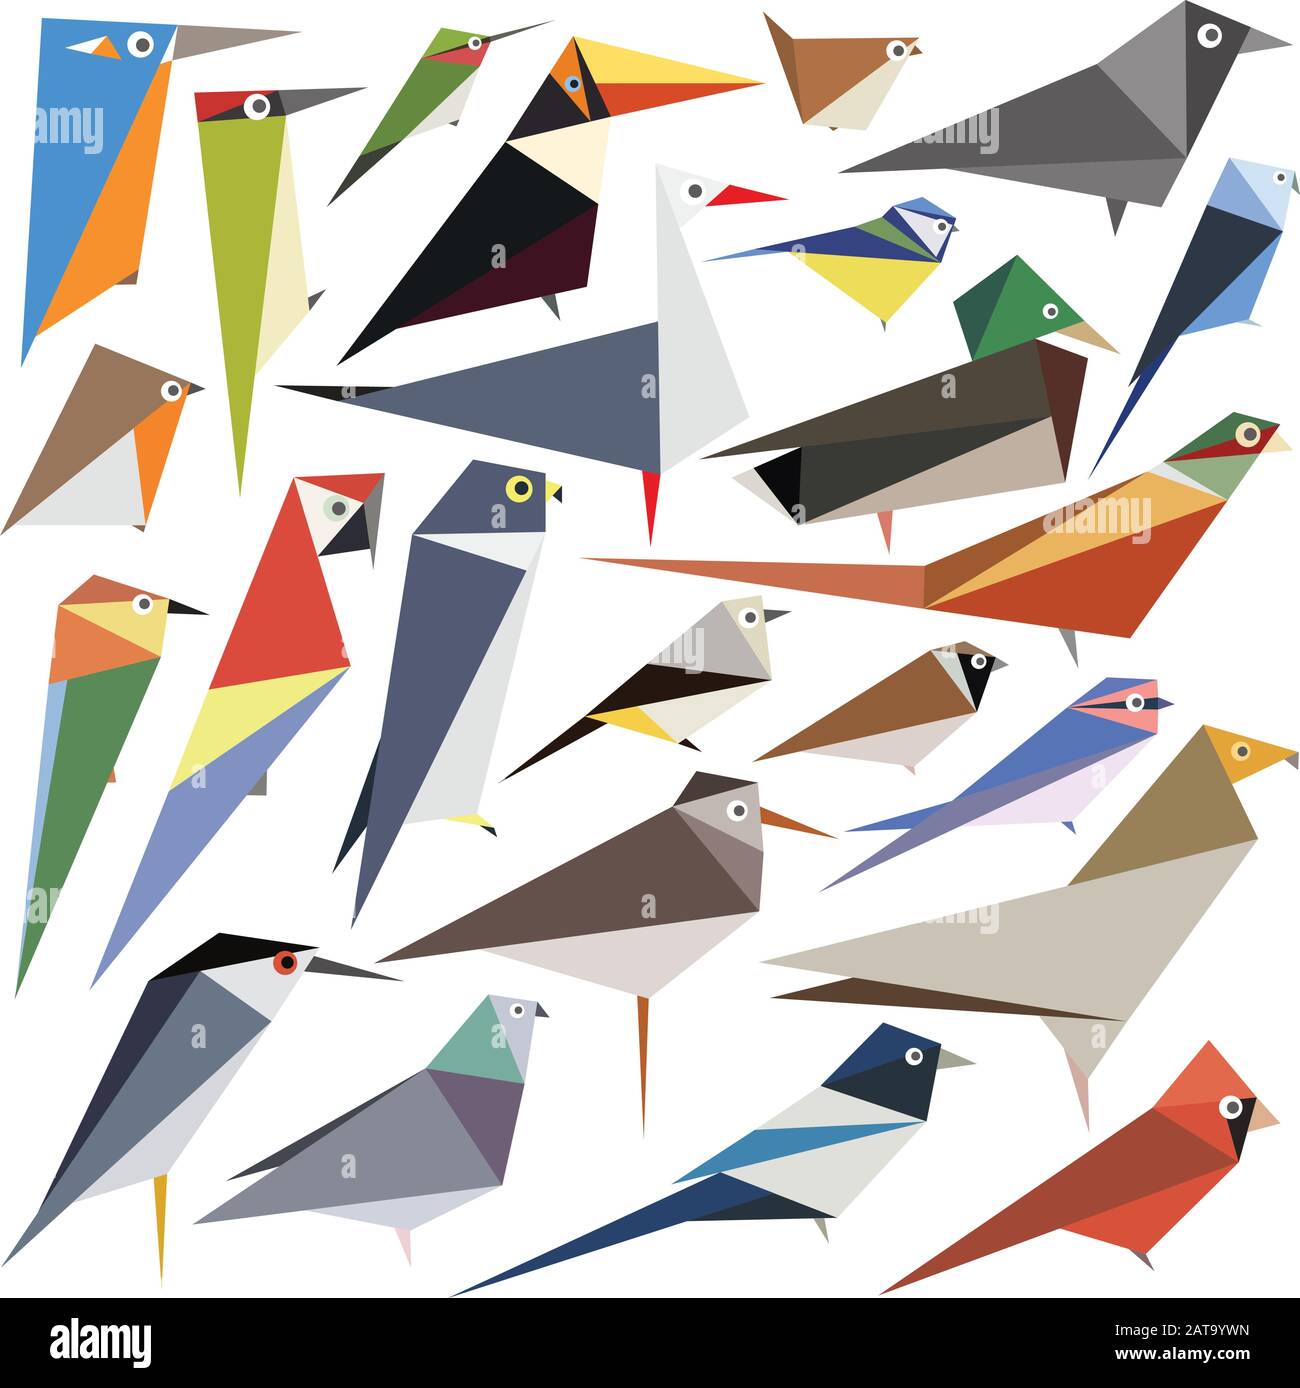 Raccolta di disegni di uccelli vettoriali modificabili realizzati con forme semplici Illustrazione Vettoriale